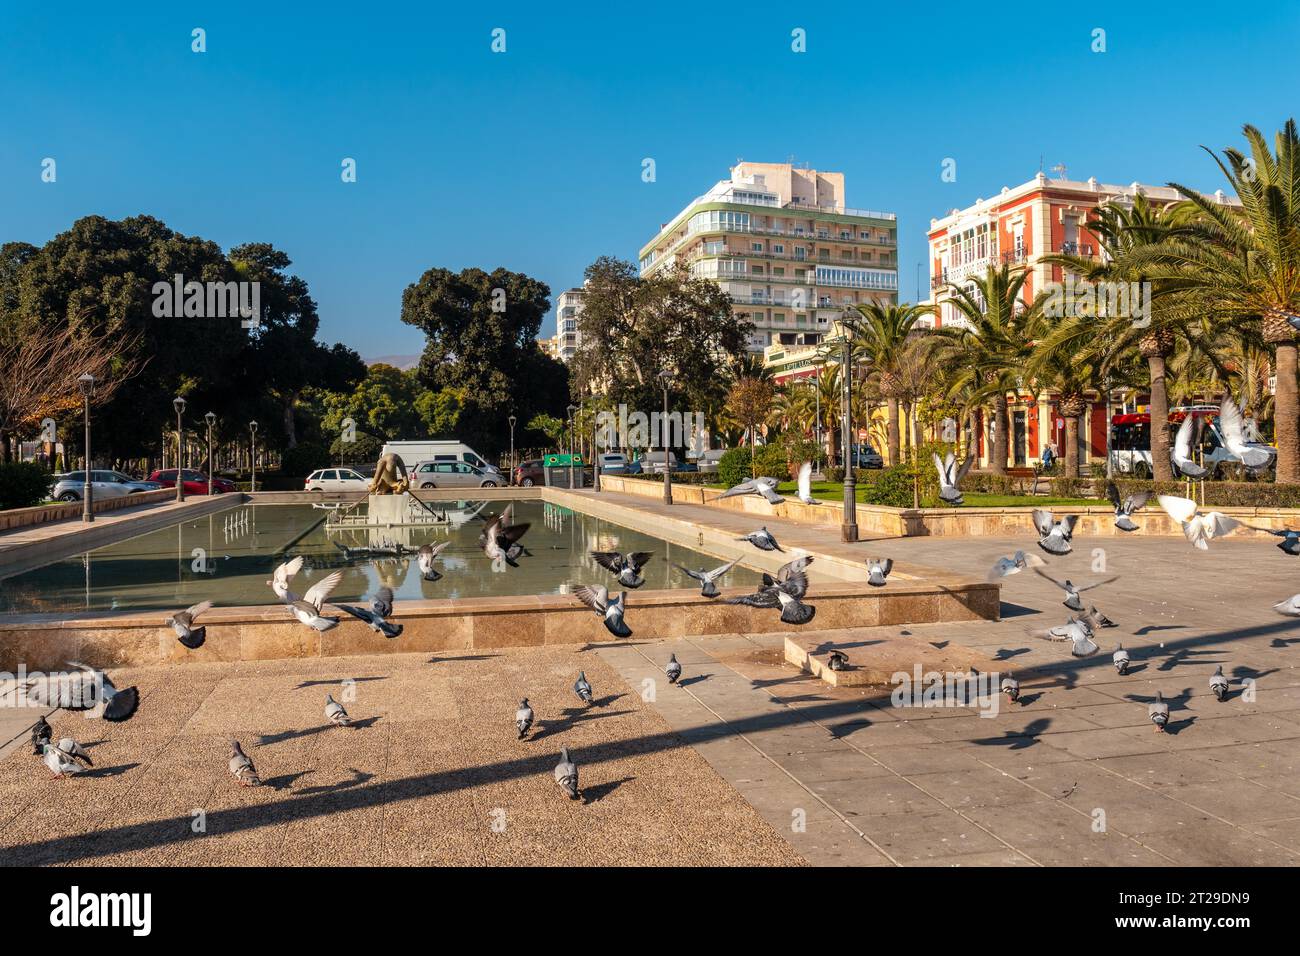 Tauben am Brunnen im Nicolas Salmeron Park der Stadt Almeria, Andalusien. Spanien. Costa del sol im mittelmeer Stockfoto